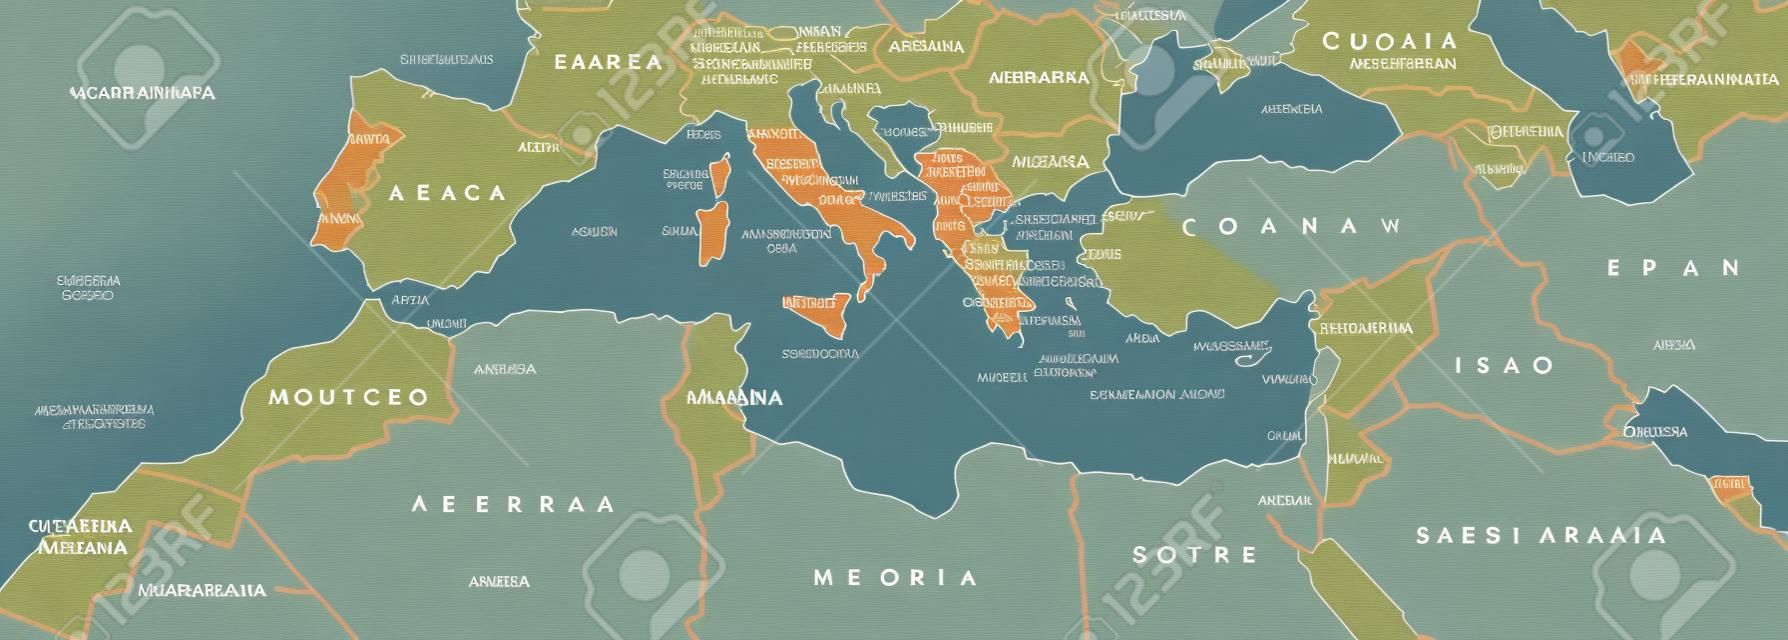 Bacino del Mediterraneo mappa politica. regione mediterranea, anche Mediterranea. Terre intorno Mar Mediterraneo. Sud Europa, Nord Africa e Vicino Oriente. illustrazione grigio con etichettatura inglese. Vettore.